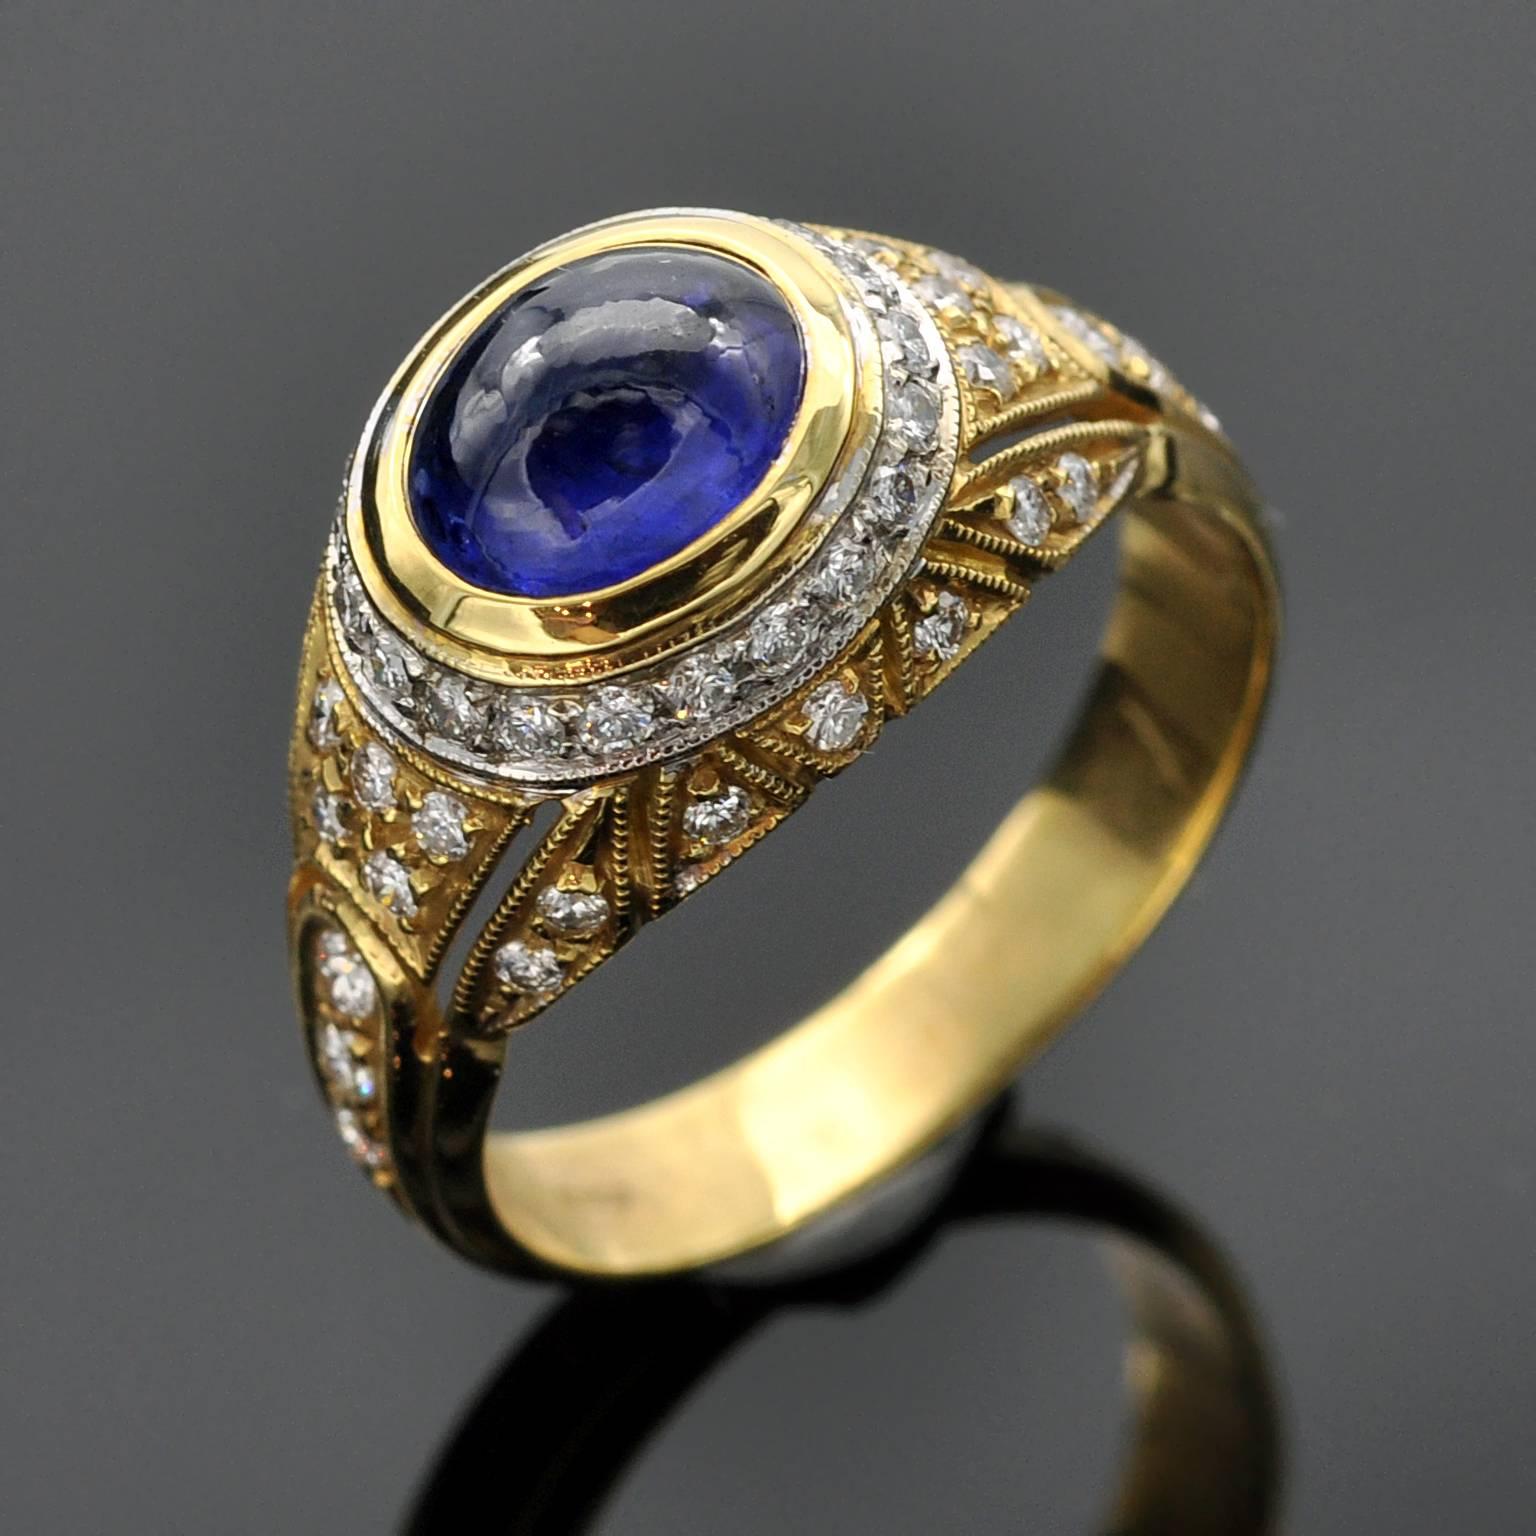 Impresionante anillo bicolor abovedado. en su centro un brillante zafiro cabujón azul. El engaste Millegrain y el trabajo cincelado dan al anillo un toque refinado.

Zafiro ± 2 quilates
diamantes : 0,50 quilates